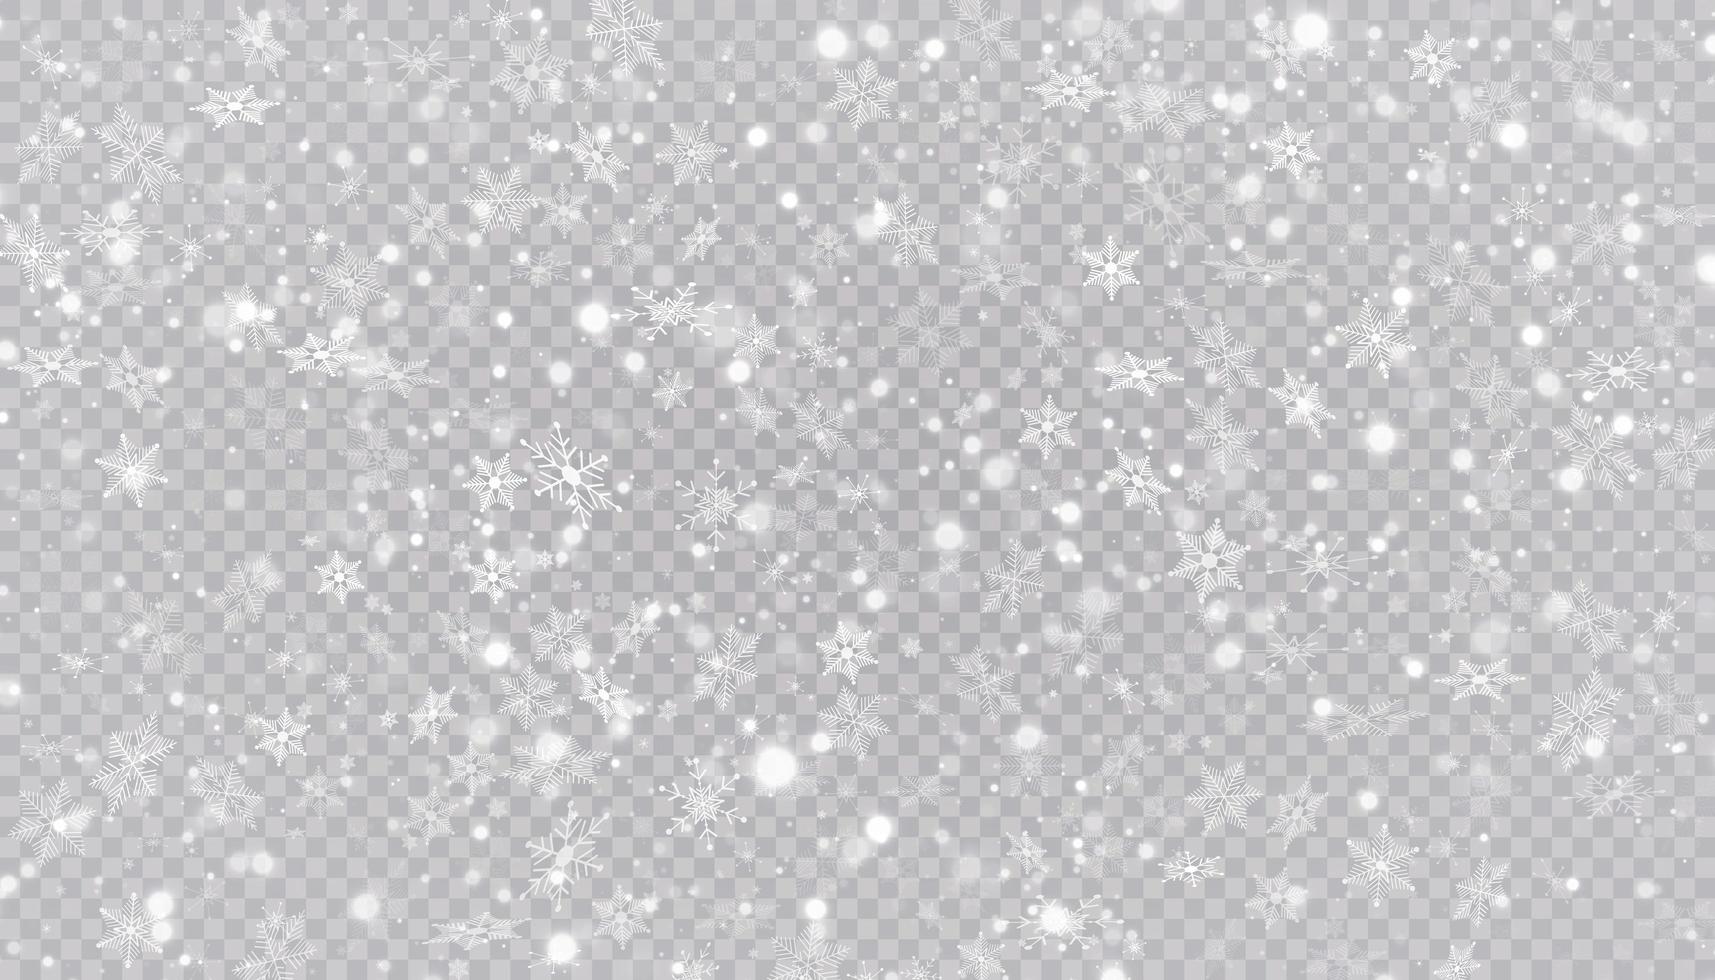 flocos de neve branca em um fundo transparente. vetor